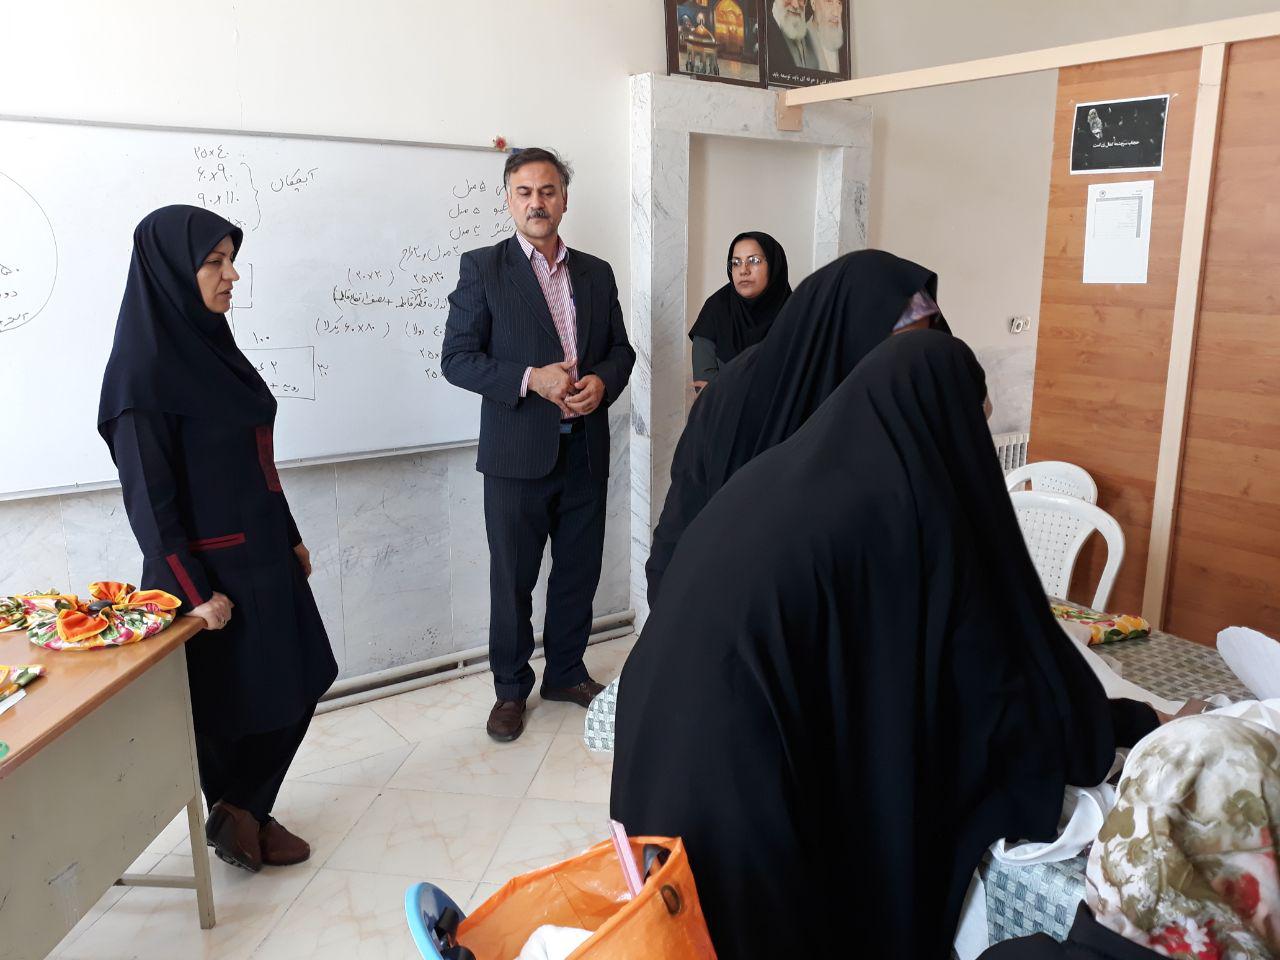 حضور ریاست محترم مرکز شماره 22 بجستان در محل کارگاه های آموزشی فعال واحد خواهران و تقدیر از کار آموزان دختر به مناسبت هفته کرامت و روز دختر